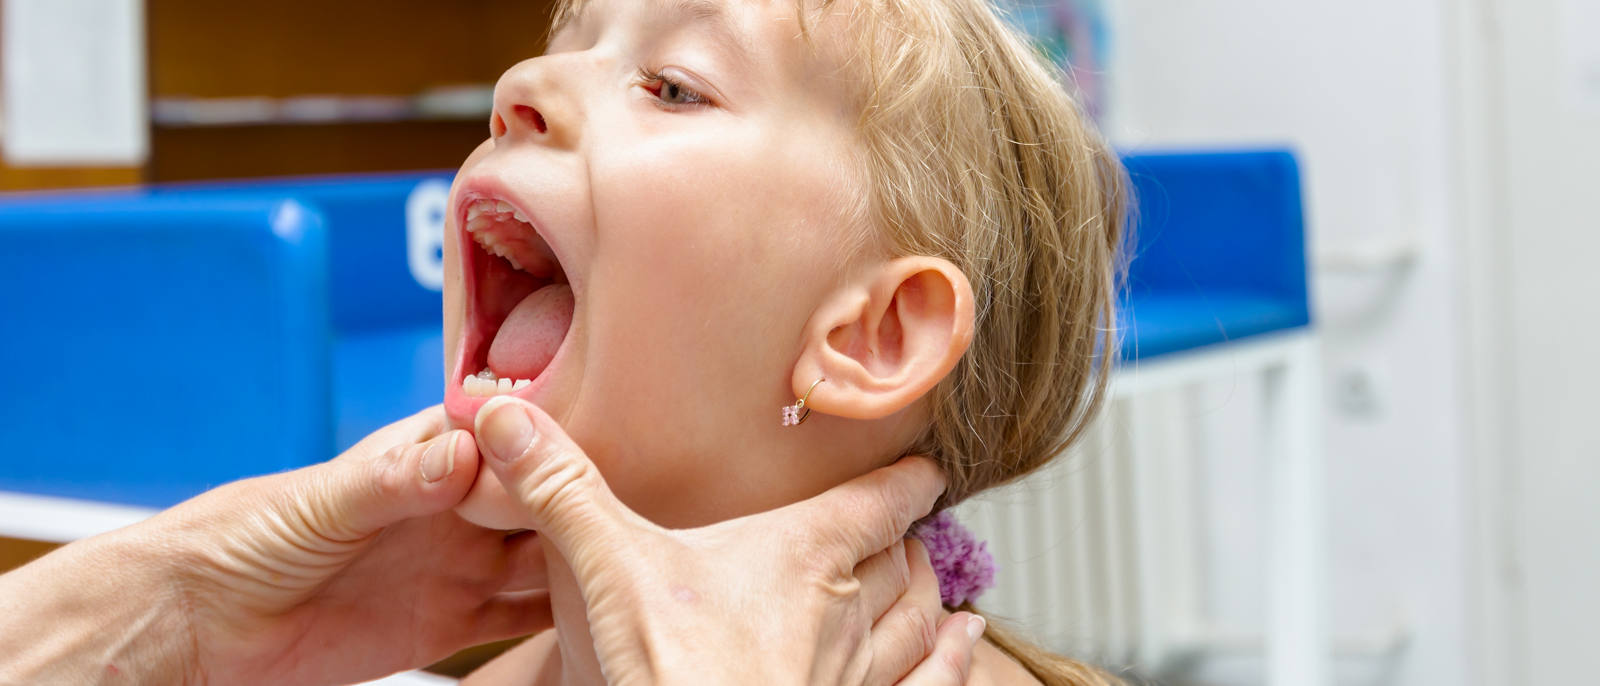 Asportazione delle tonsille: quando è indicata?